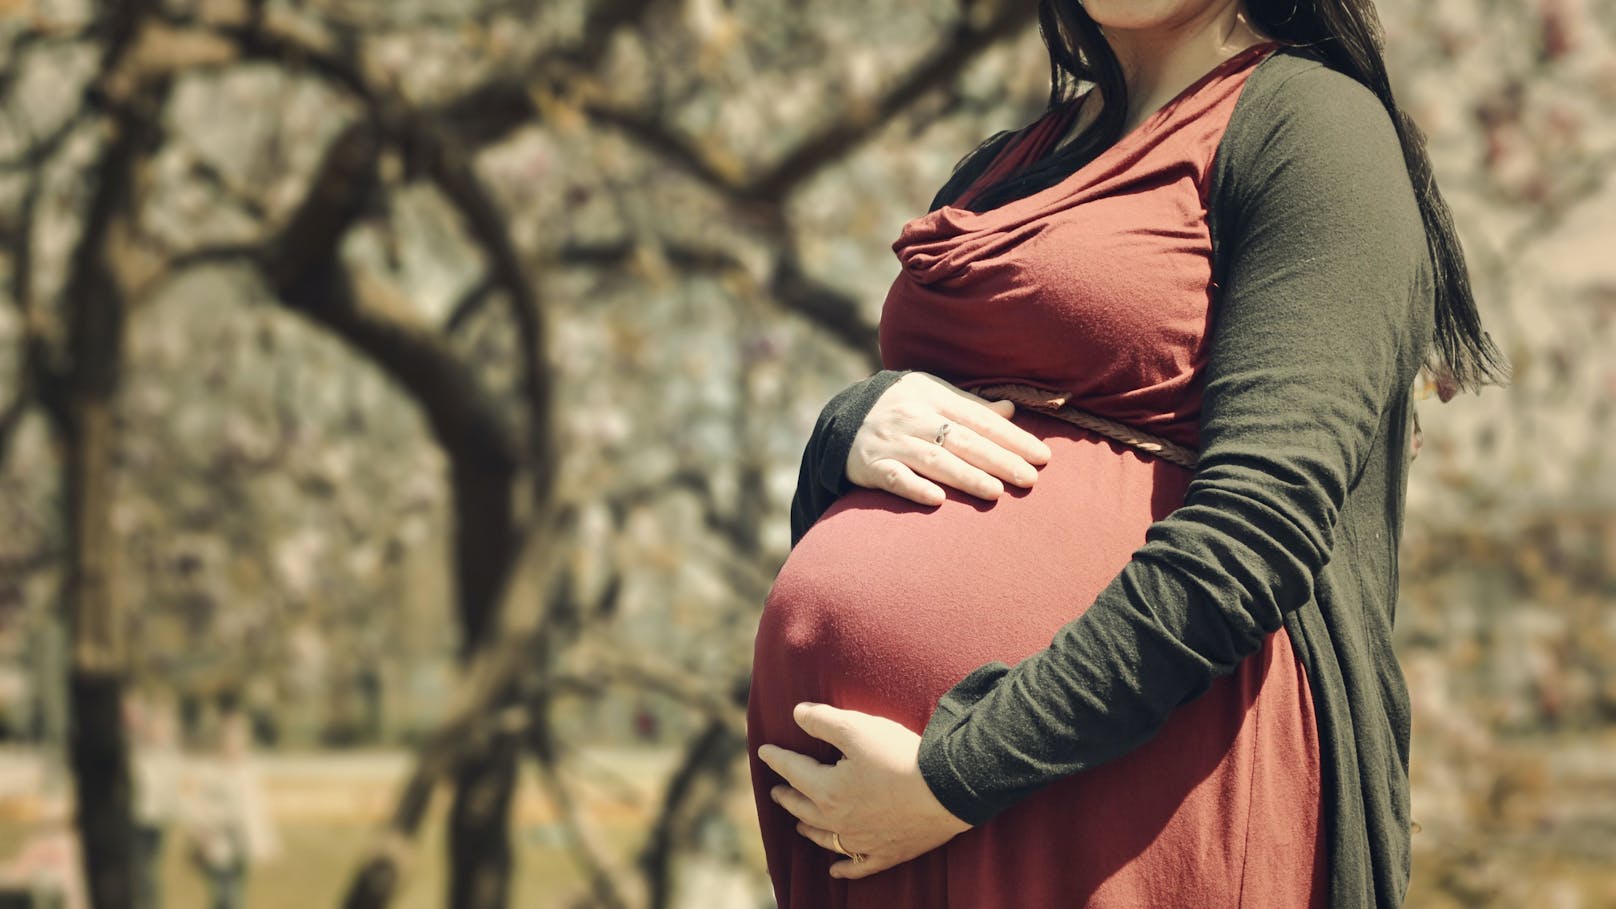 140 Frauen schwanger, weil Staat Pille ohne Wirkung gab